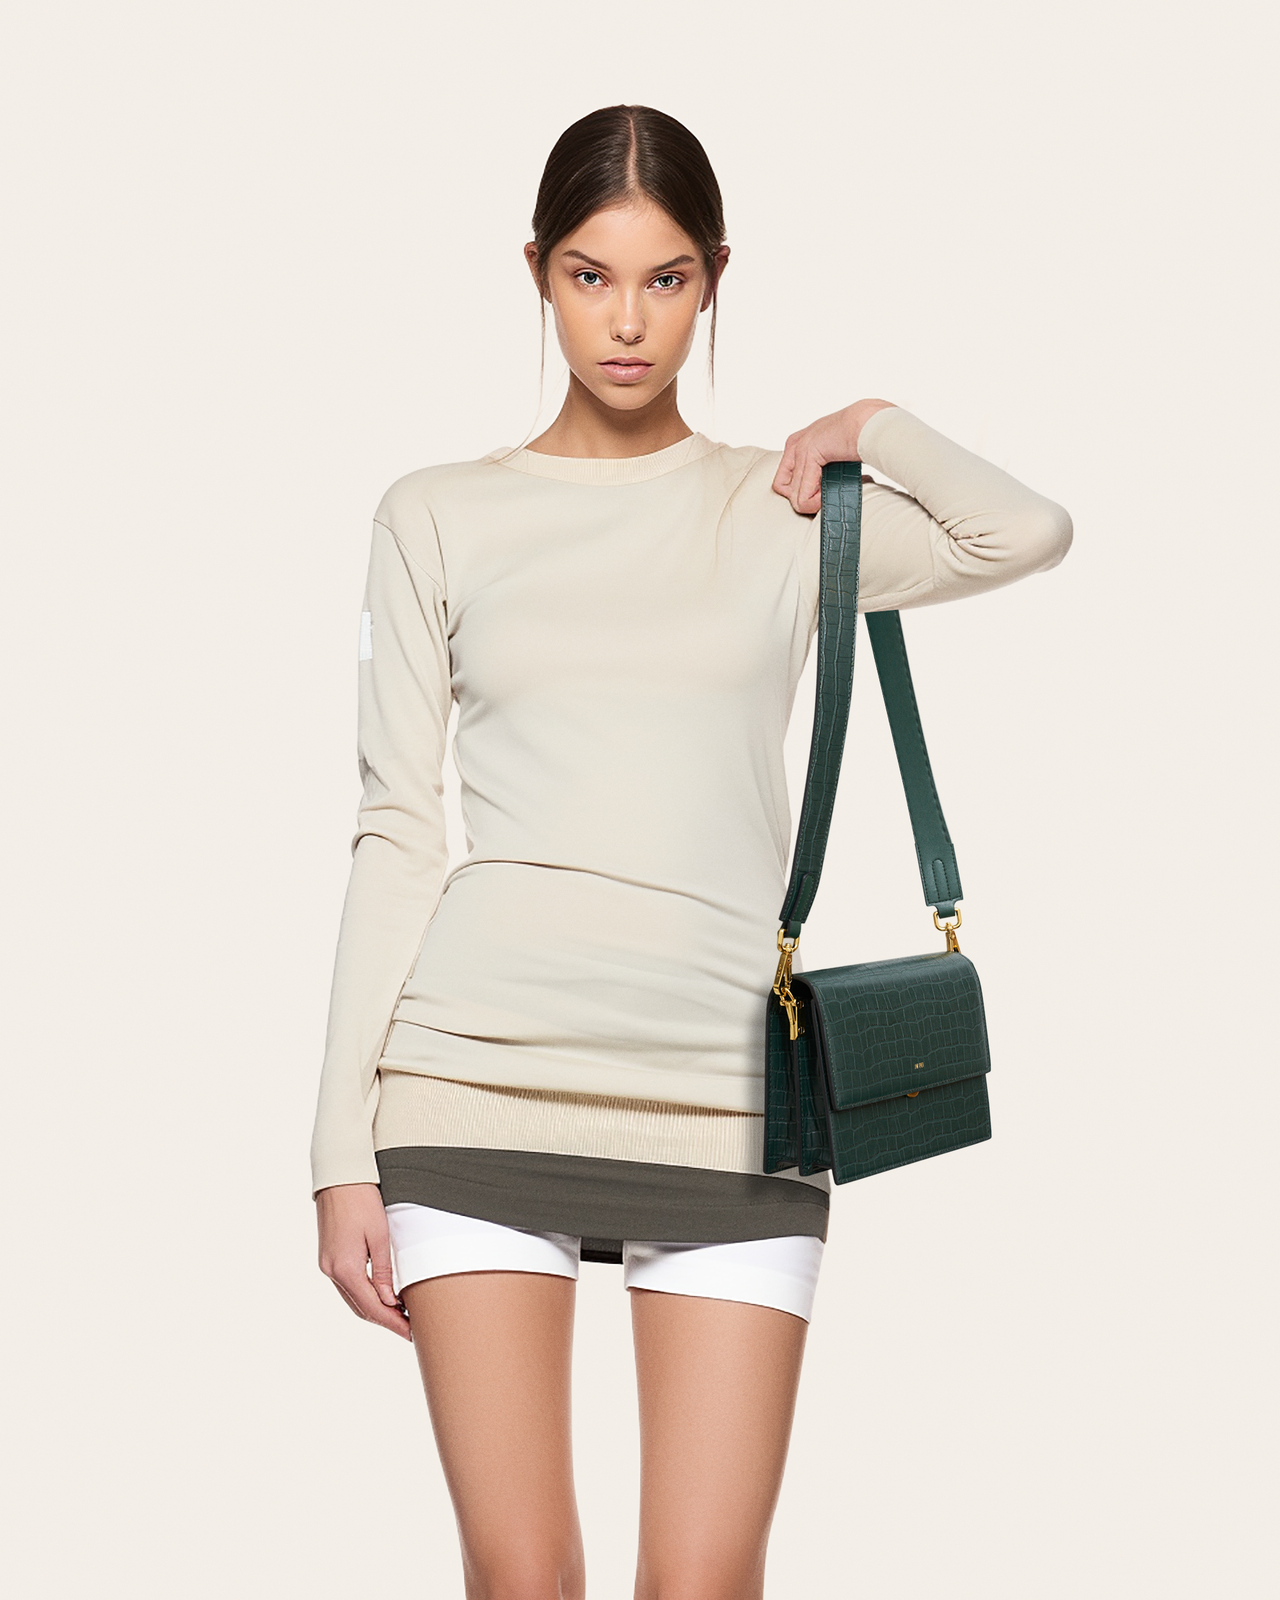 Gabbi Bag - Coral Almond - Fashion Women Vegan Bag Online Shopping - JW Pei